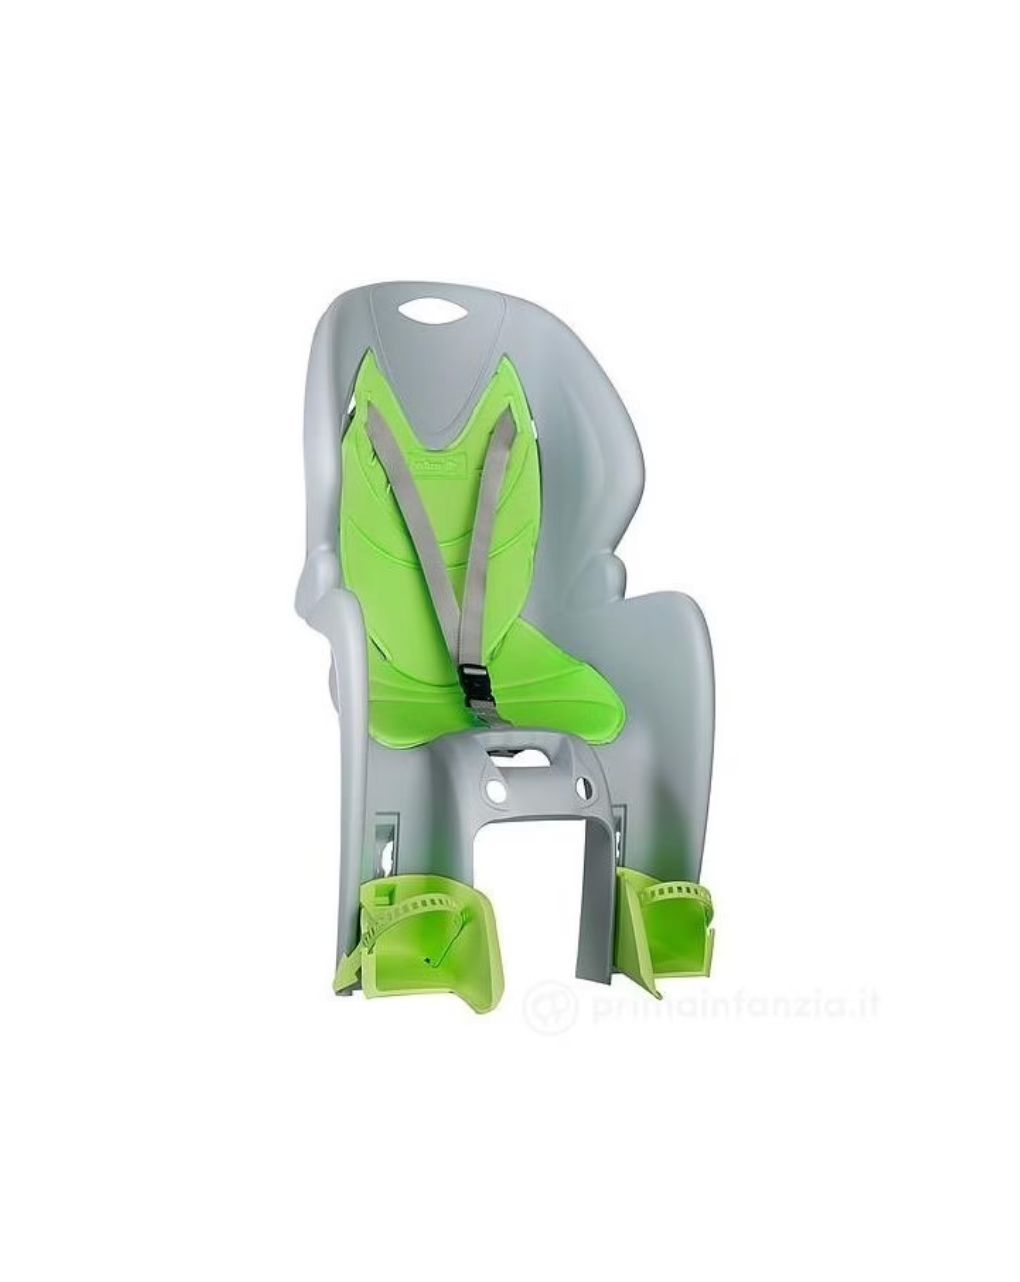 Nfun simpatico παιδικό κάθισμα ποδηλάτου πράσινο - 'nfun